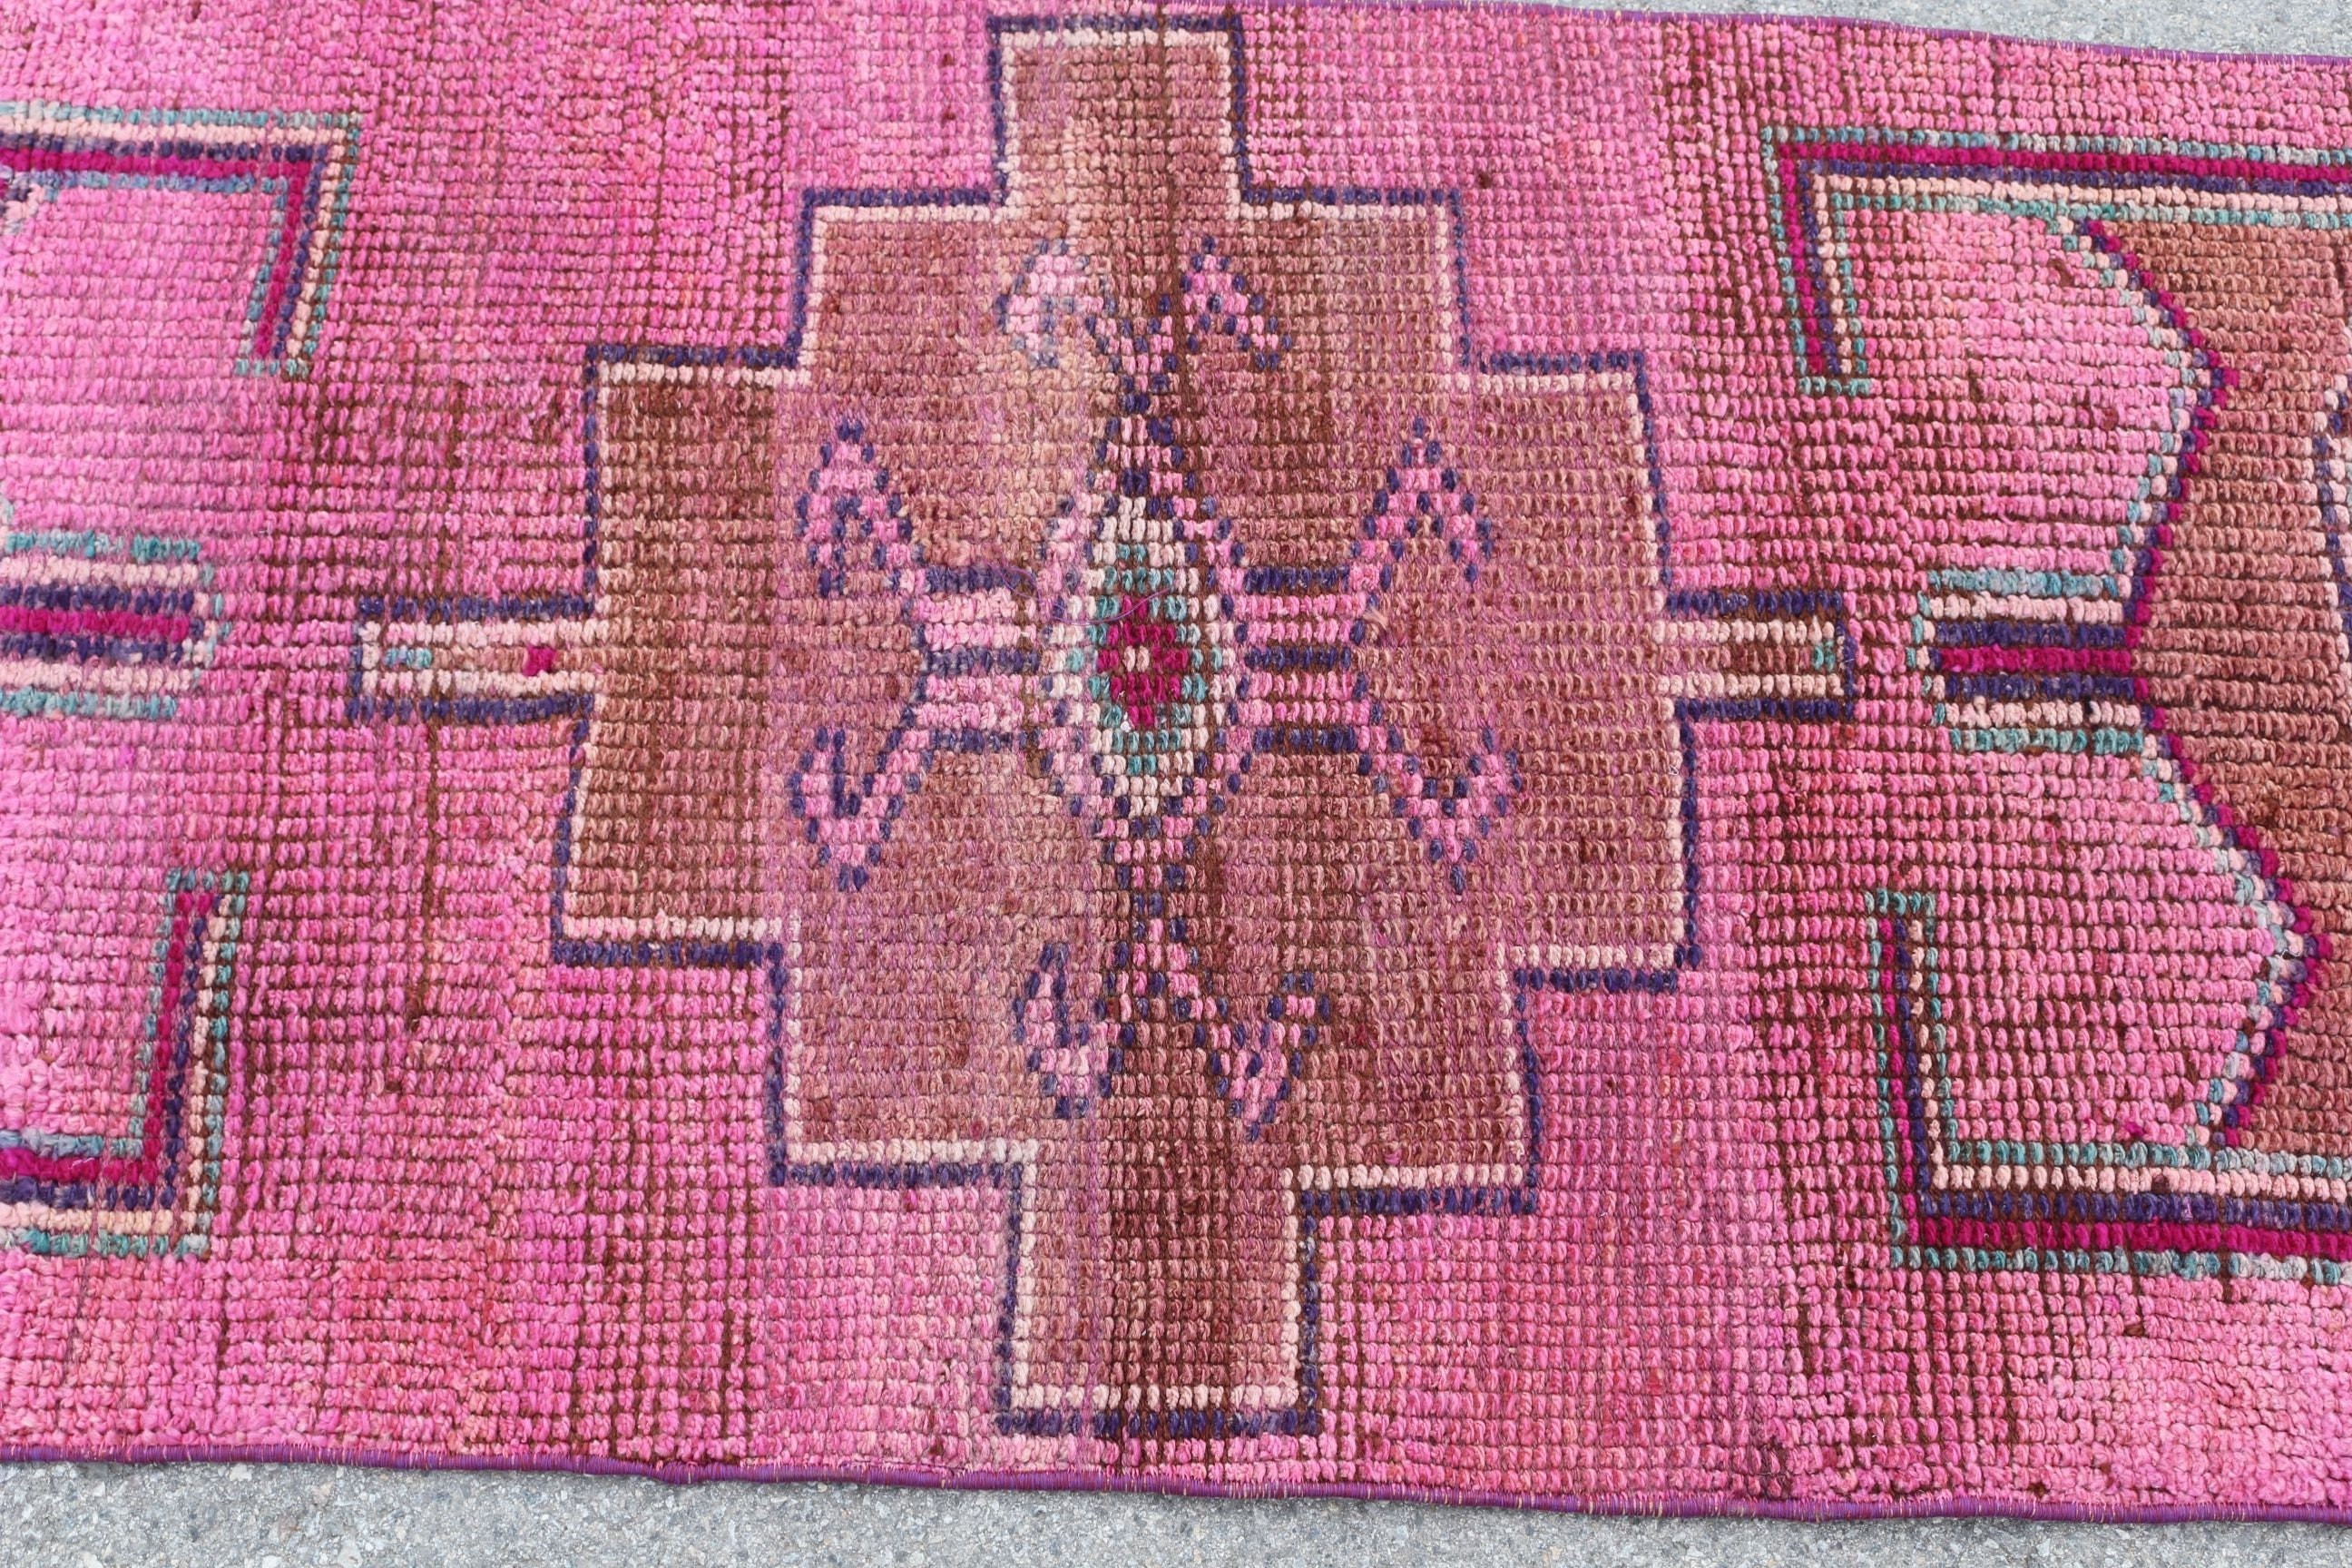 Turkish Rug, Cool Rugs, Vintage Rugs, Floor Rug, Hallway Rugs, 2.4x10.1 ft Runner Rugs, Rugs for Hallway, Stair Rug, Pink Oushak Rugs